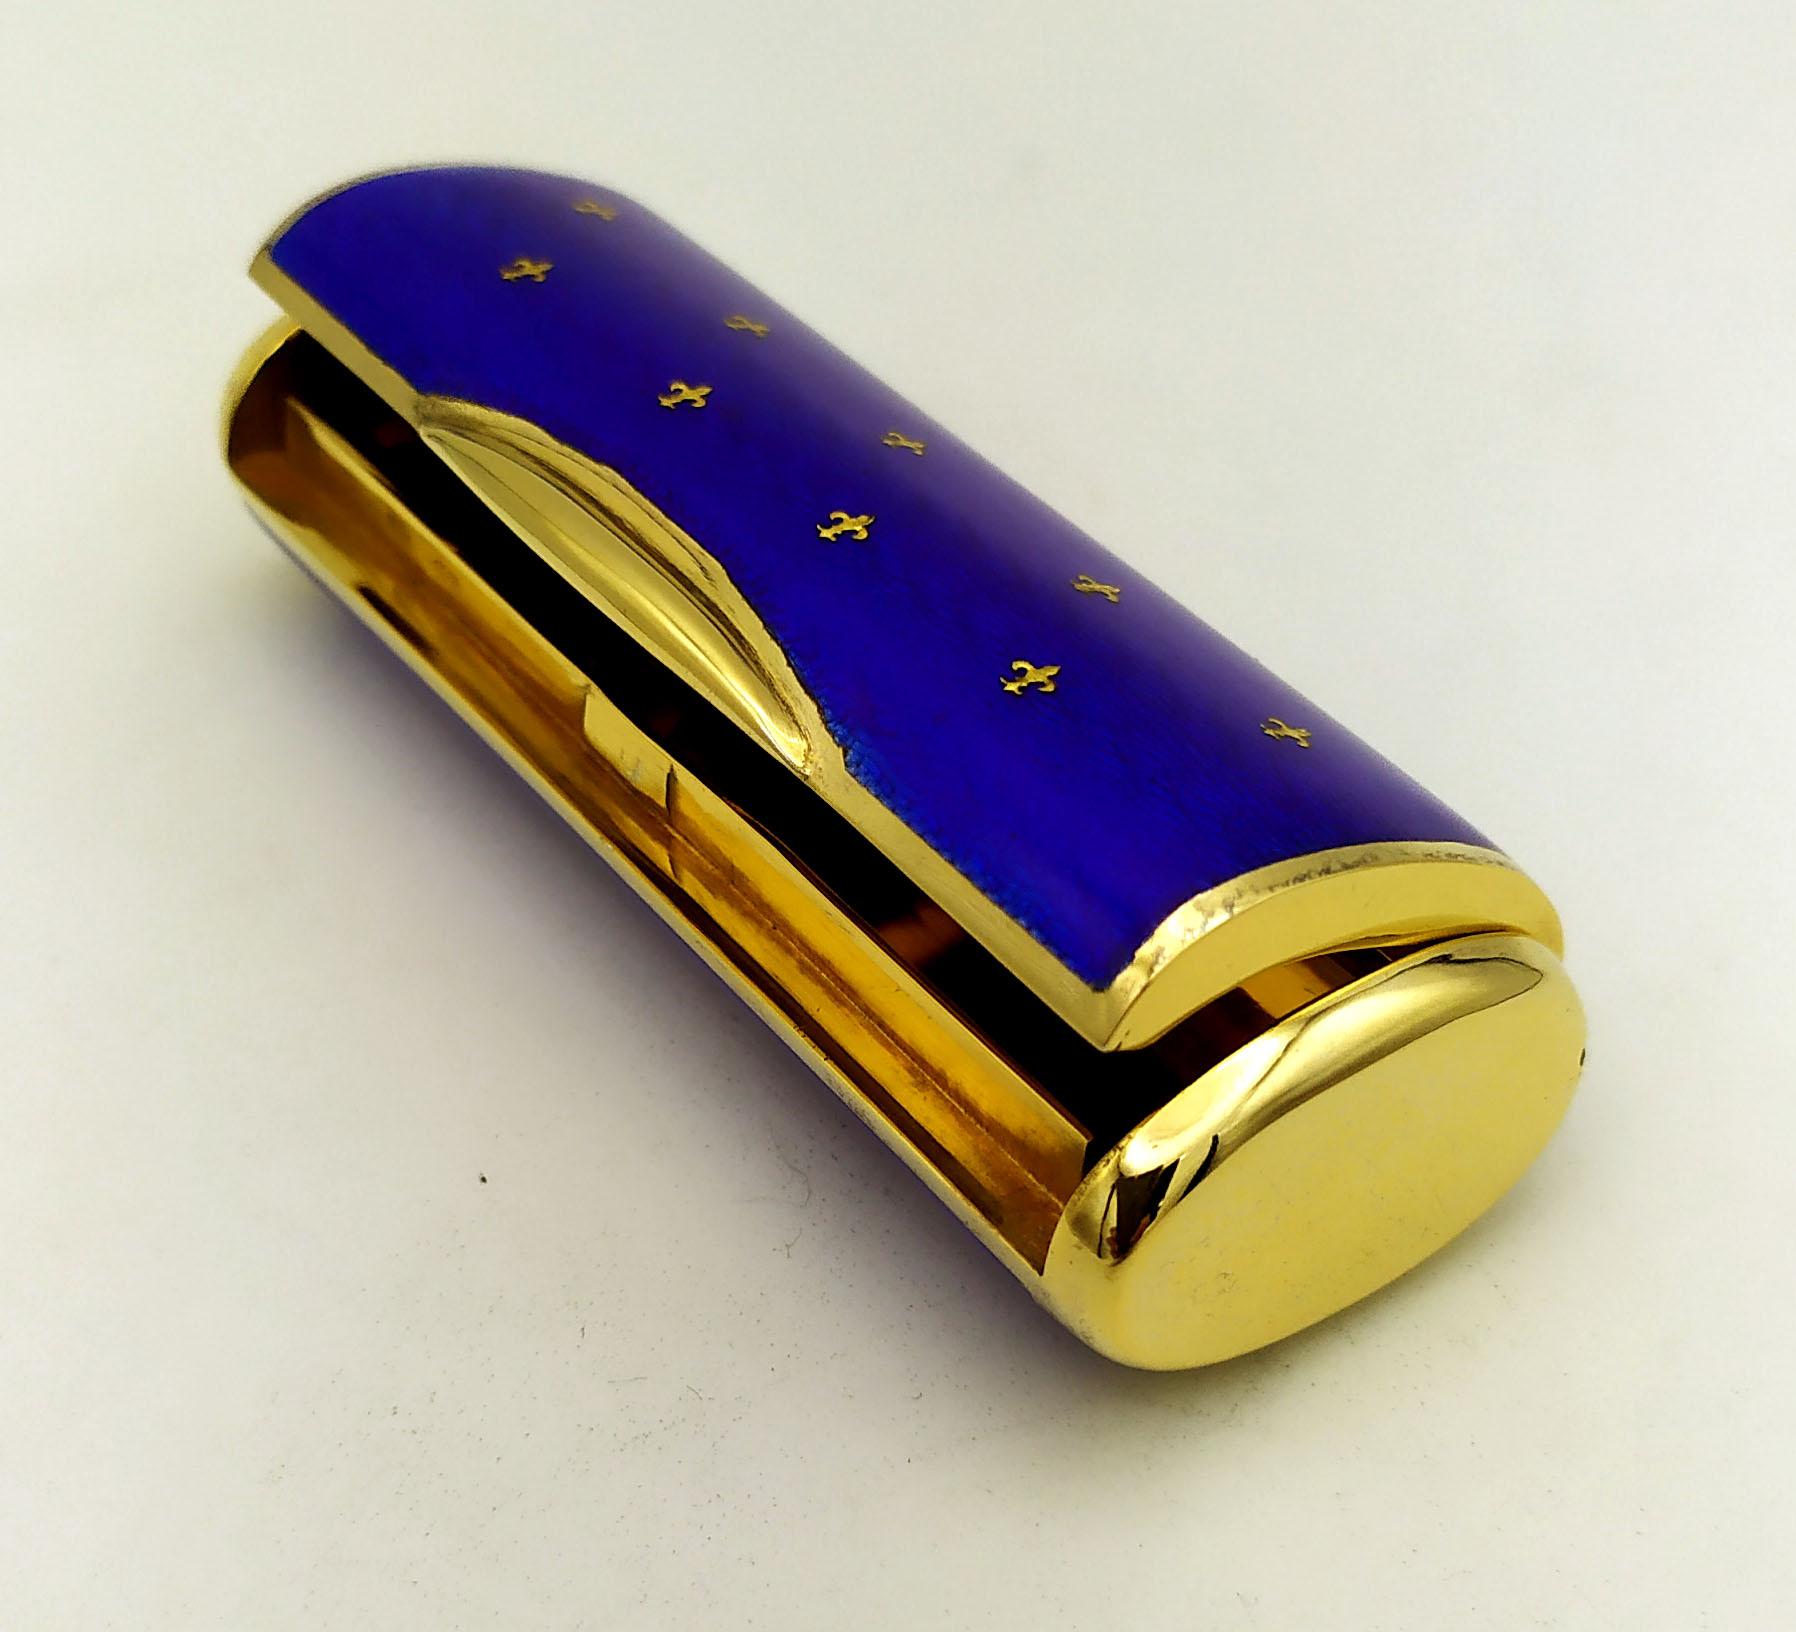 Rechteckige ovale Form Tasche Schnupftabakdose in 925/1000 Sterling Silber vergoldet mit transluzenten blauen gebrannten Emaille auf guillochè und mit der Einfügung von reinem Gold 